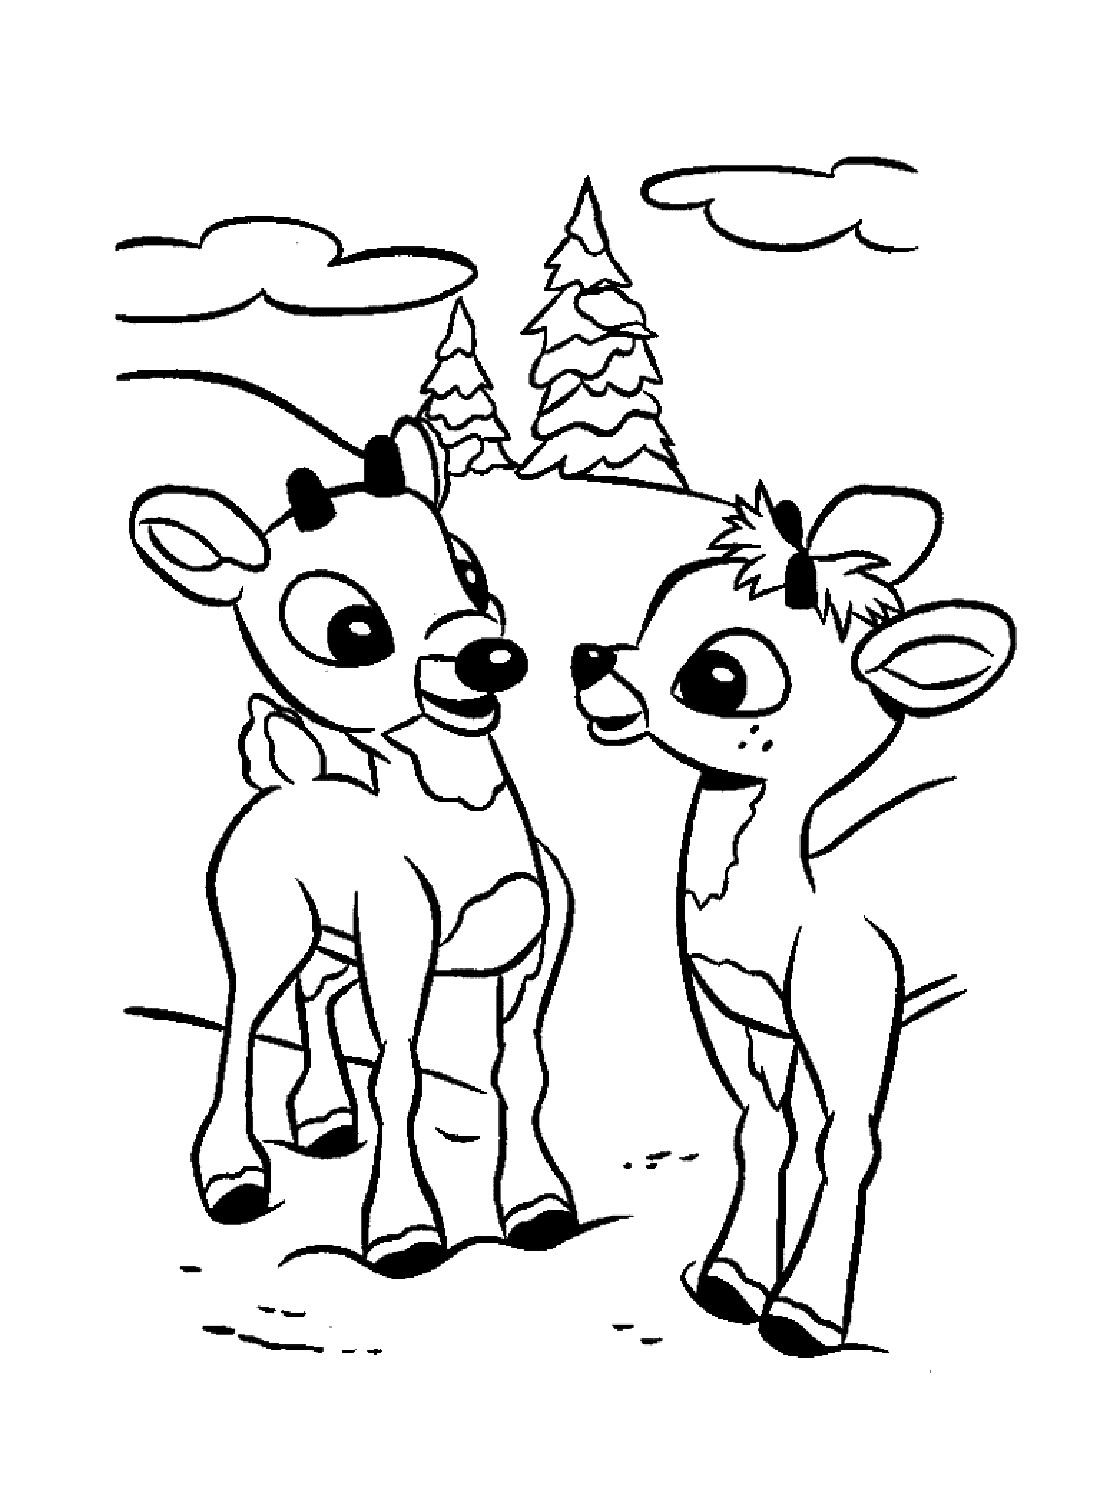 Rudolph e un'altra renna from Rudolph